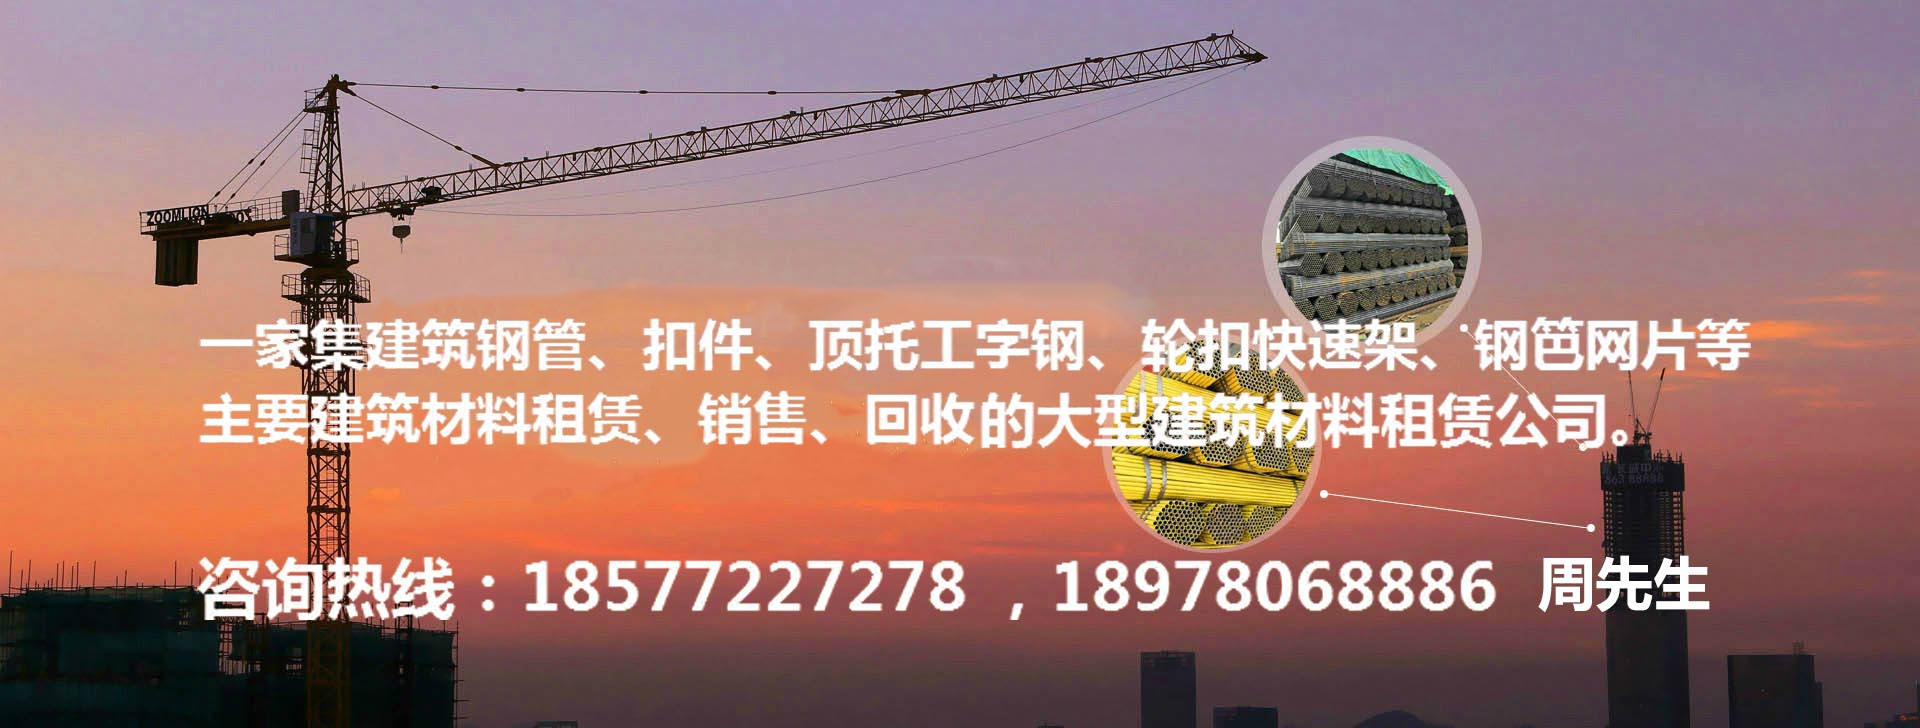 柳州市鑫磊建筑設備租賃有限公司